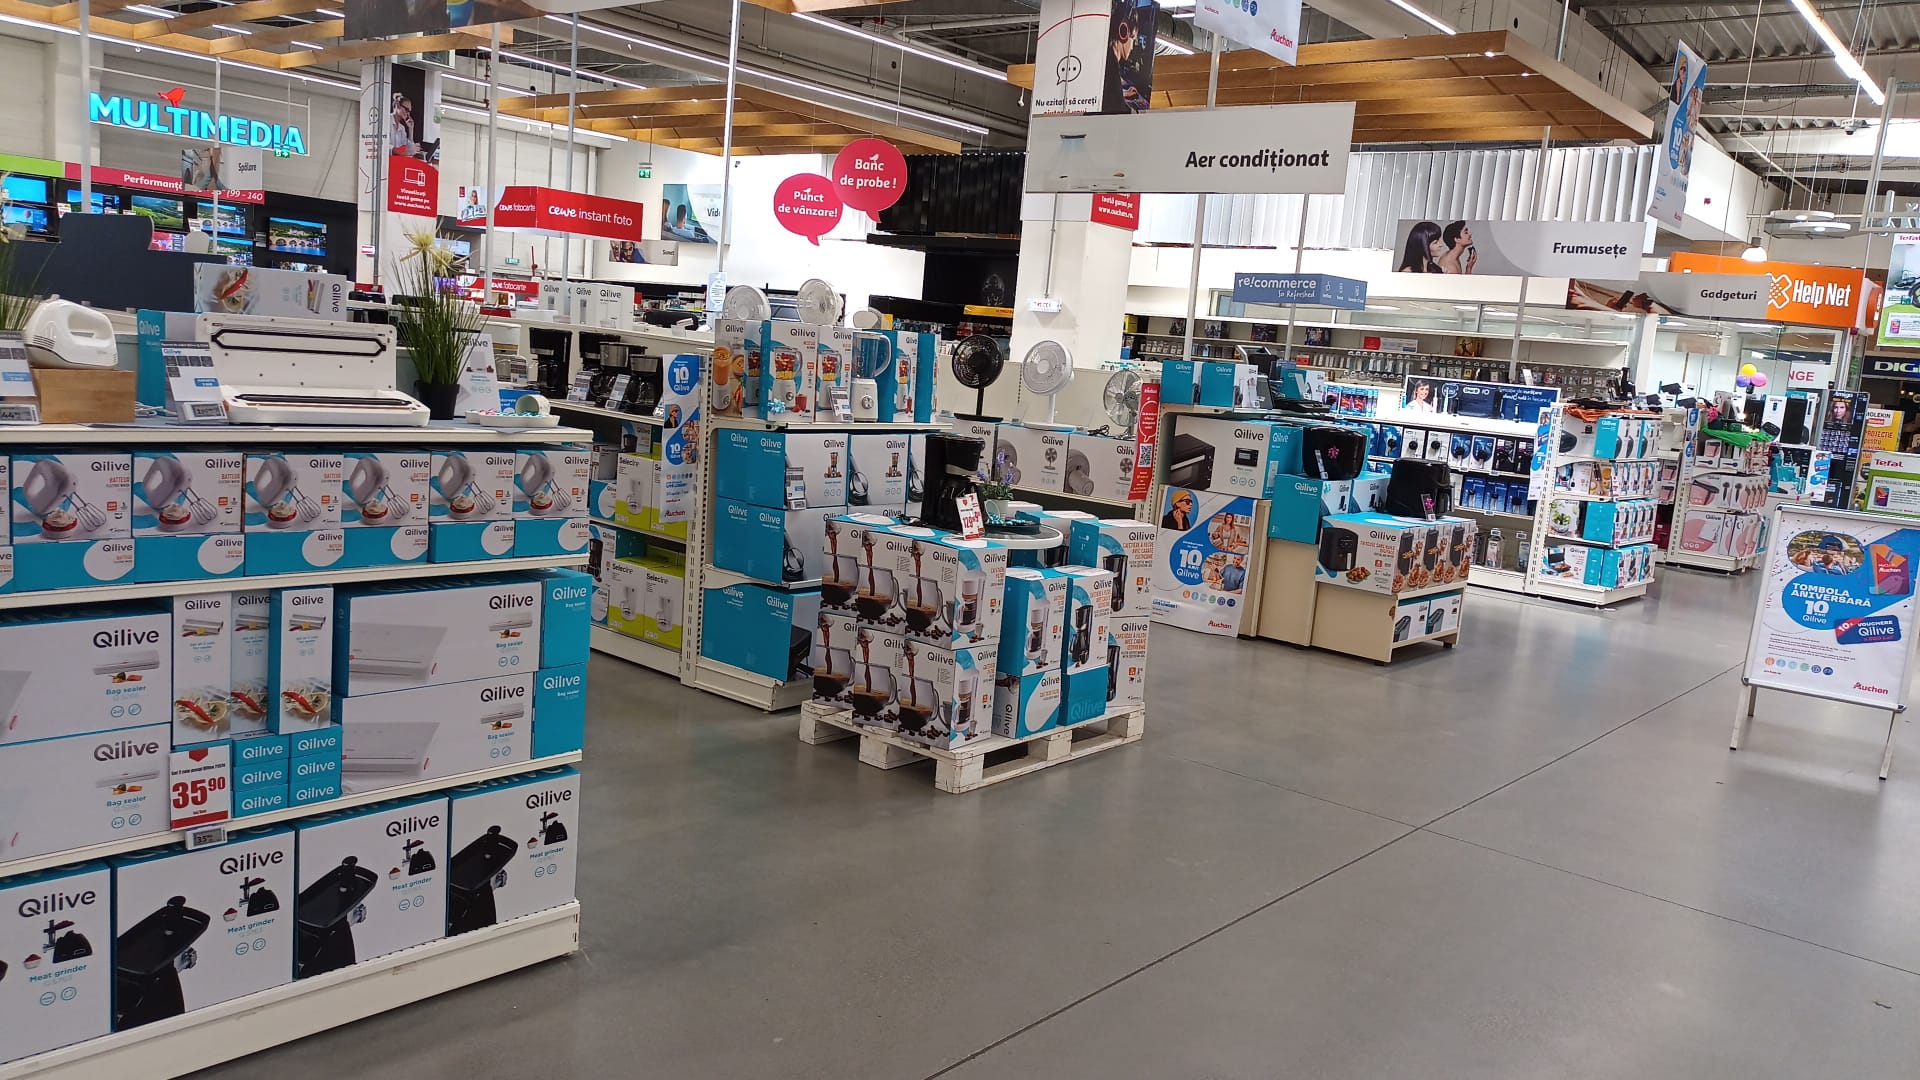 IP 10 de Qilive - marca exclusiva Auchan (2)